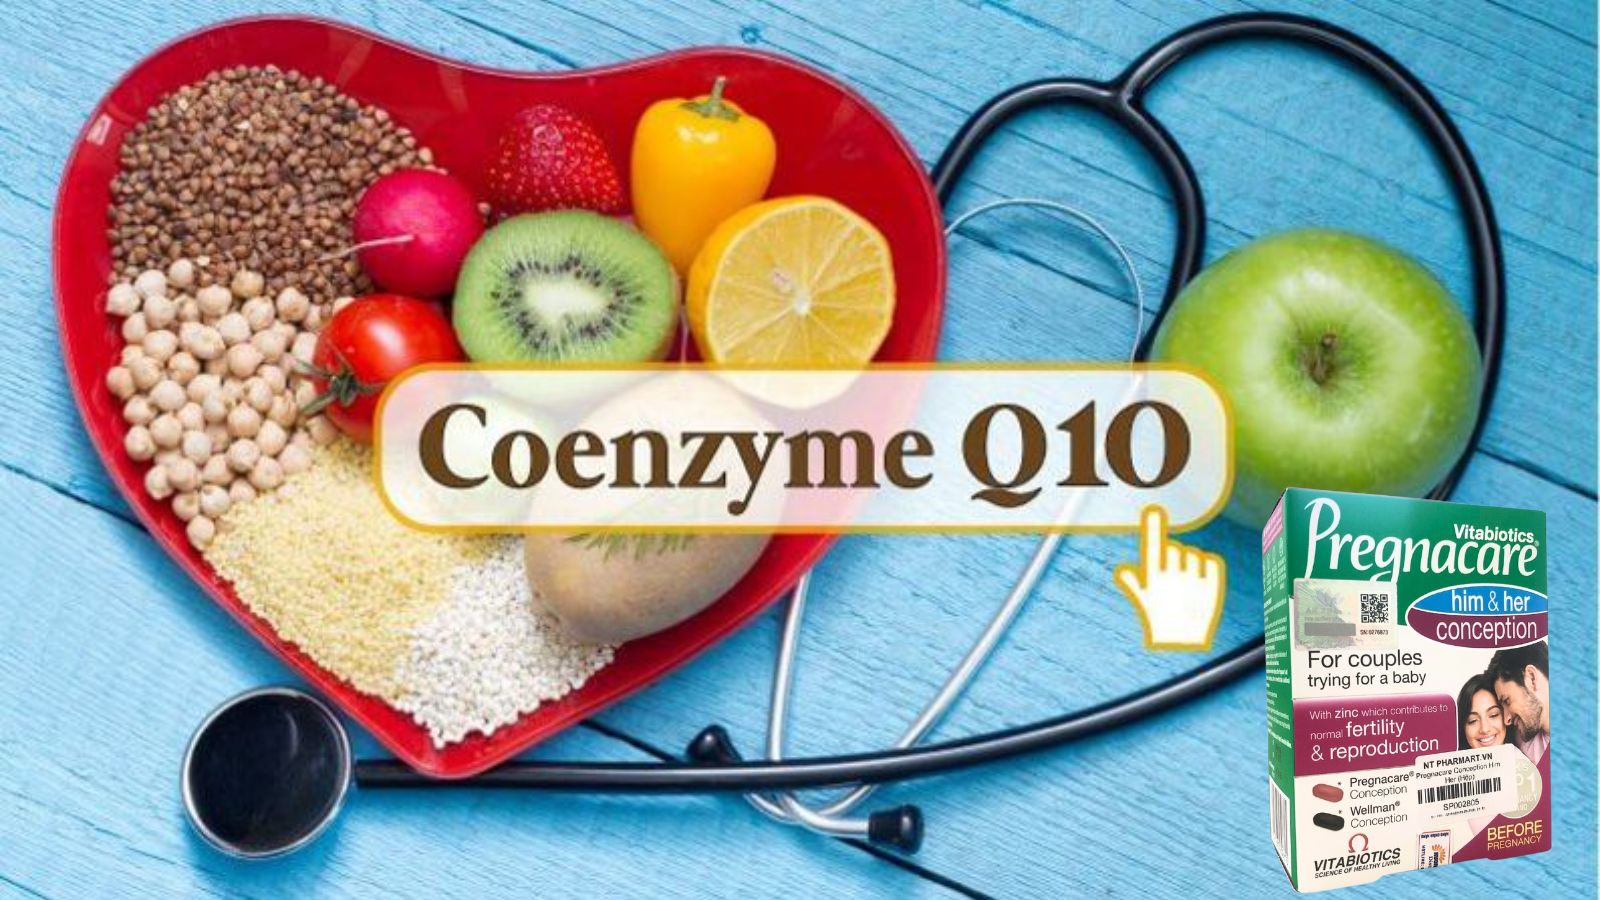 Co-Enzyme Q10 hỗ trợ tăng cường ham muốn tình dục